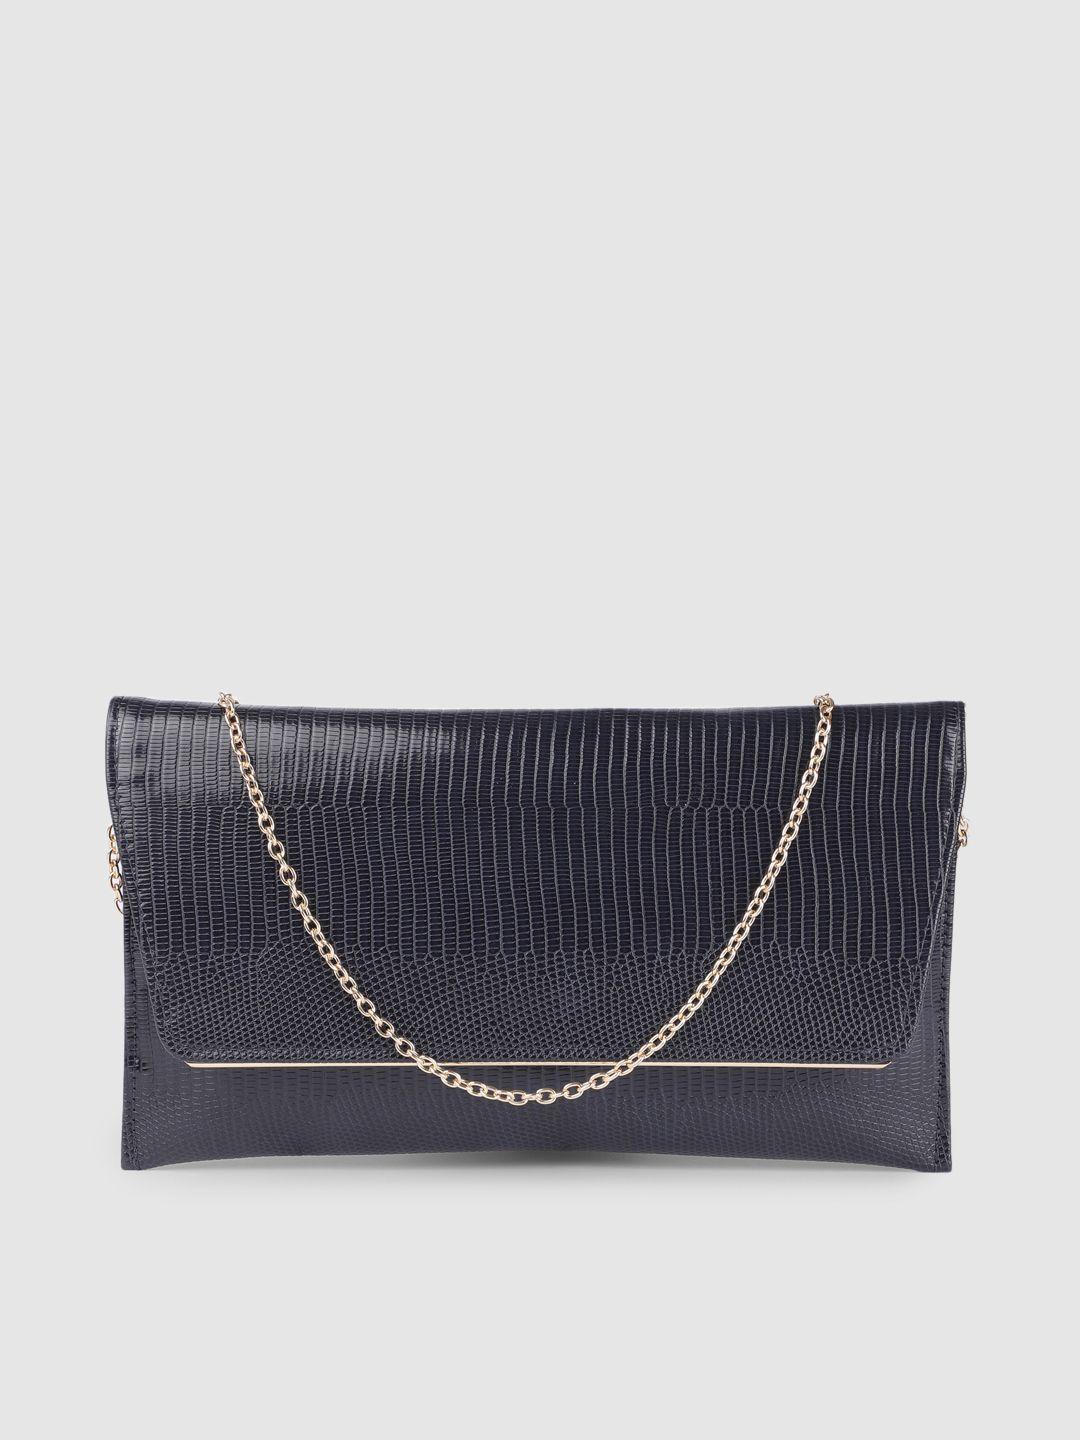 accessorize women navy blue textured envelope clutch